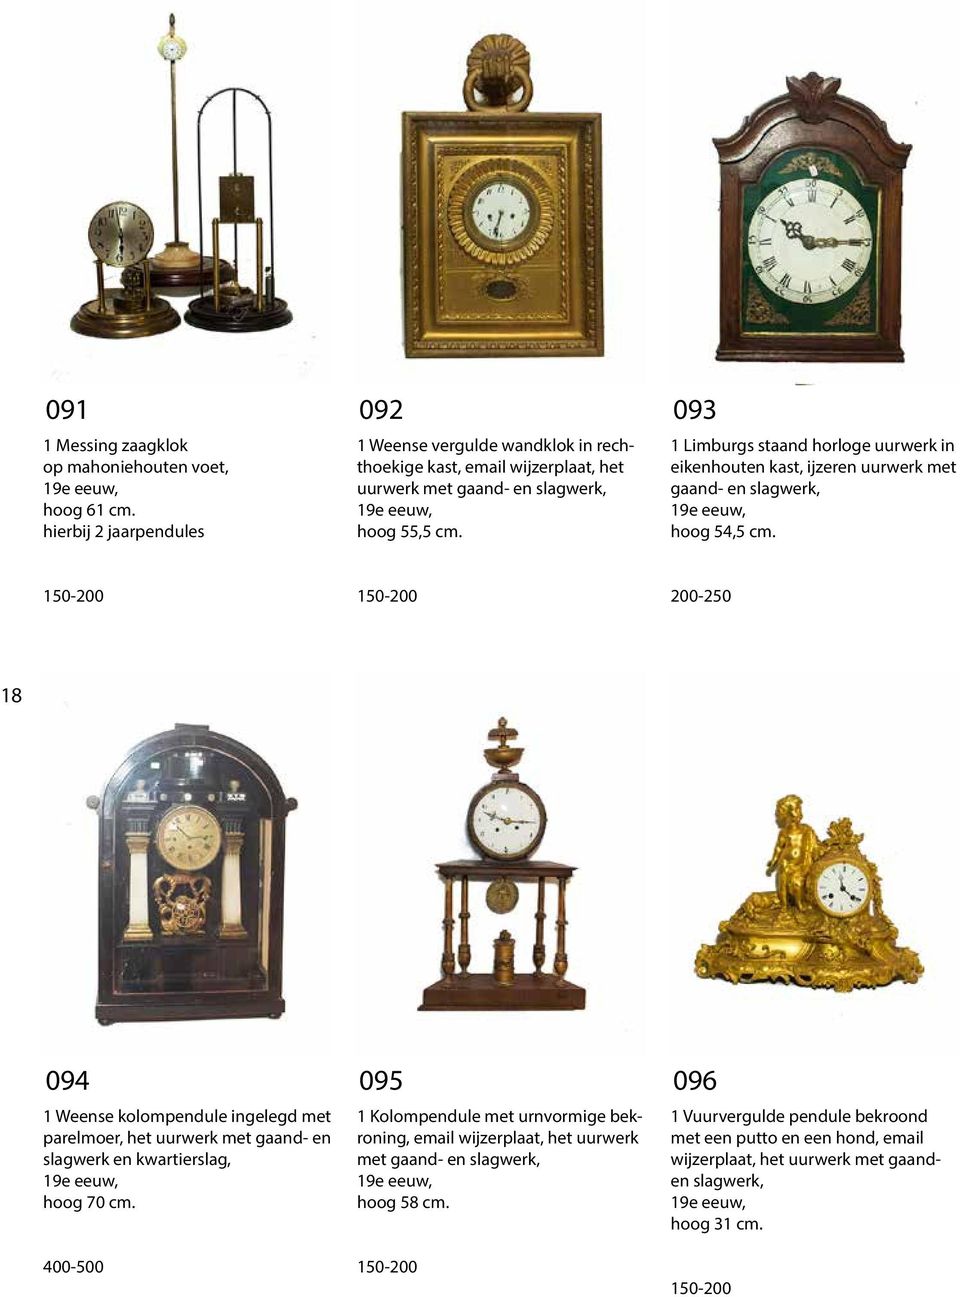 093 1 Limburgs staand horloge uurwerk in eikenhouten kast, ijzeren uurwerk met gaand- en slagwerk, hoog 54,5 cm.